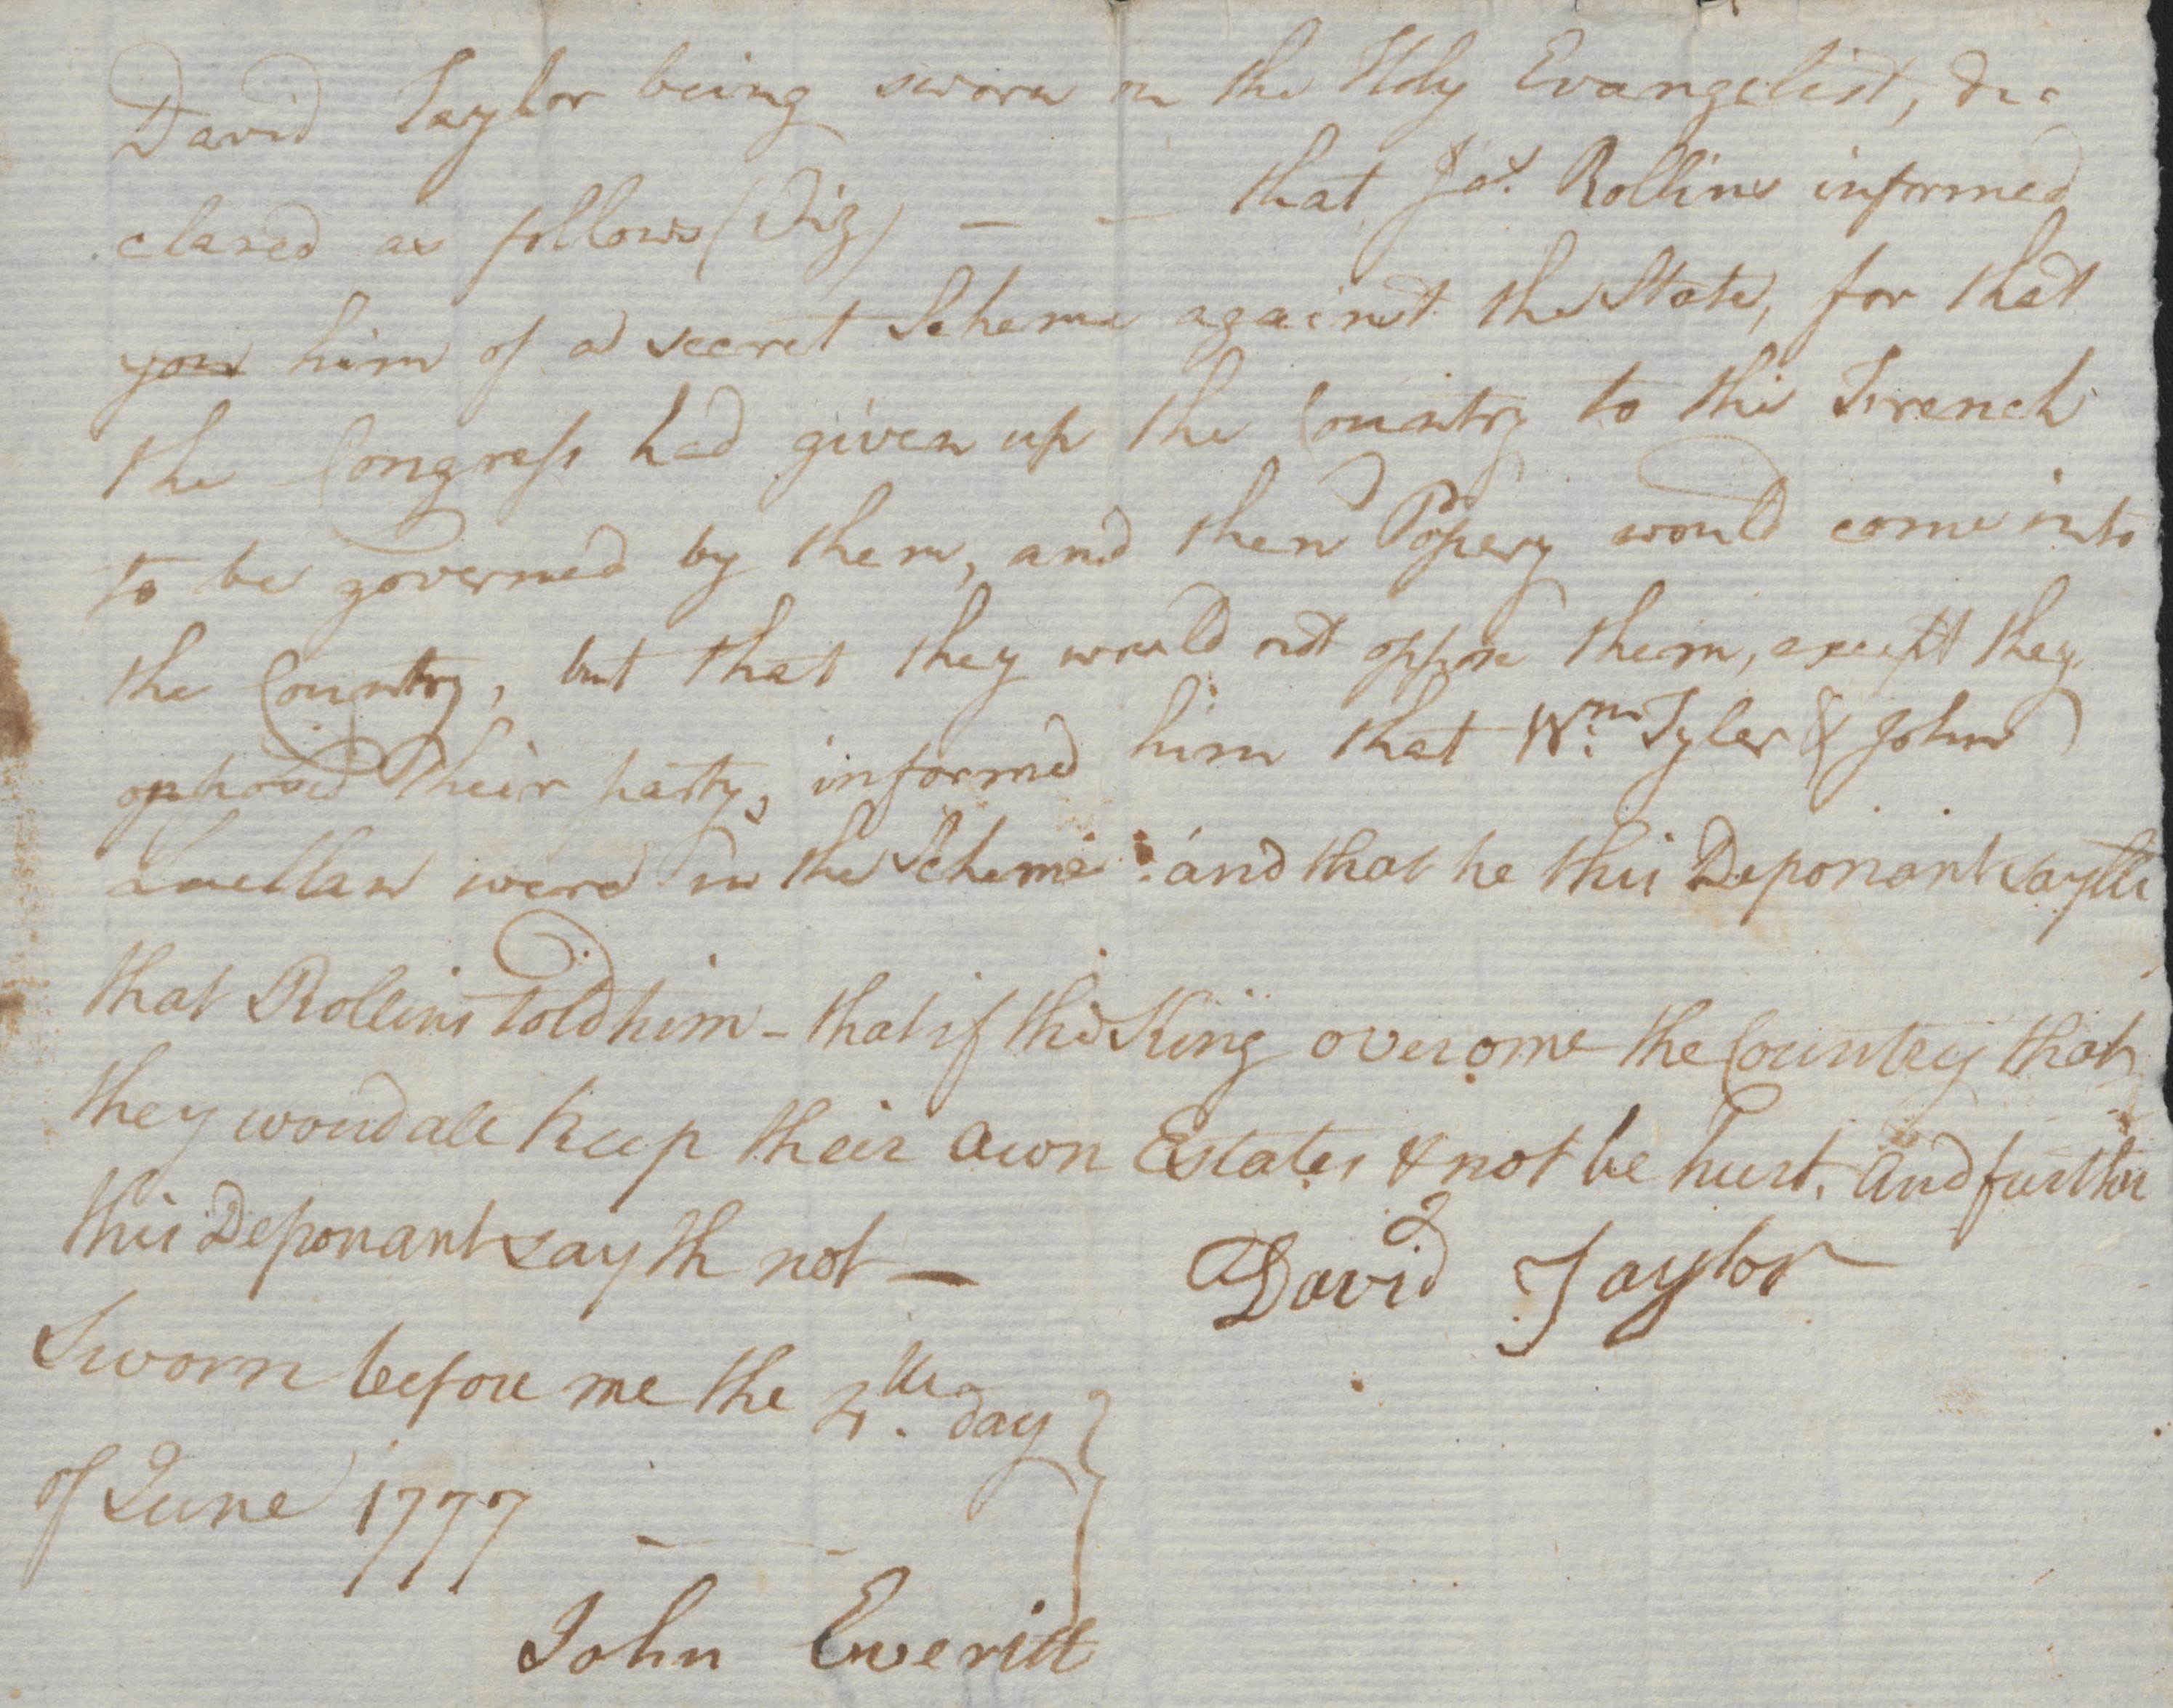 Deposition of David Taylor, 4 June 1777